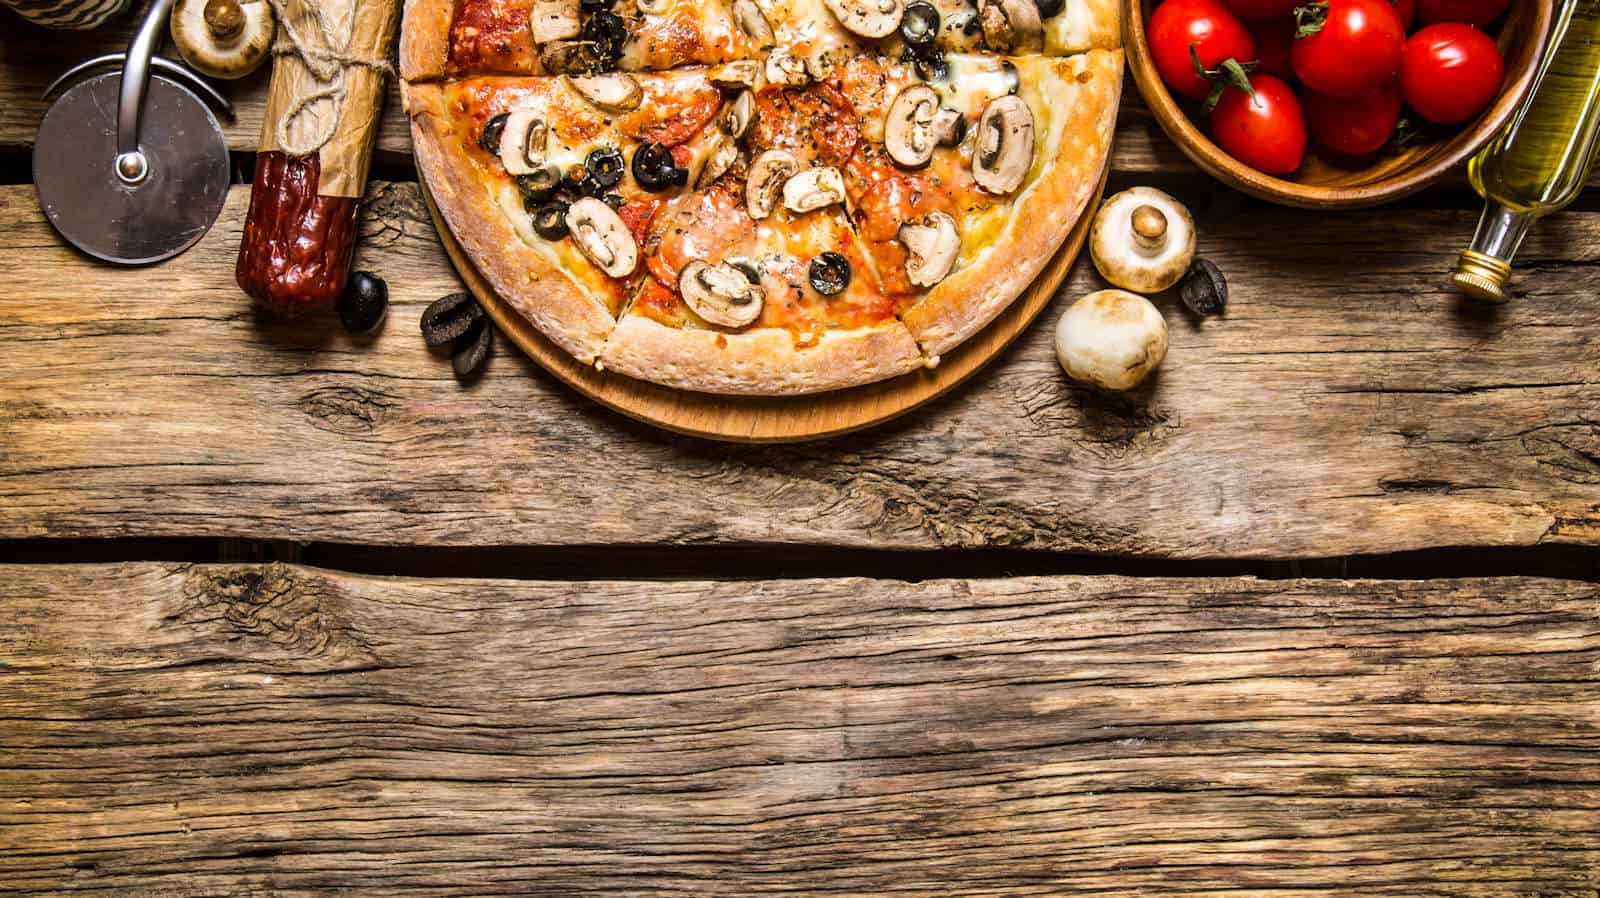 Fresco Pizzeria & Pastaria of Tucson